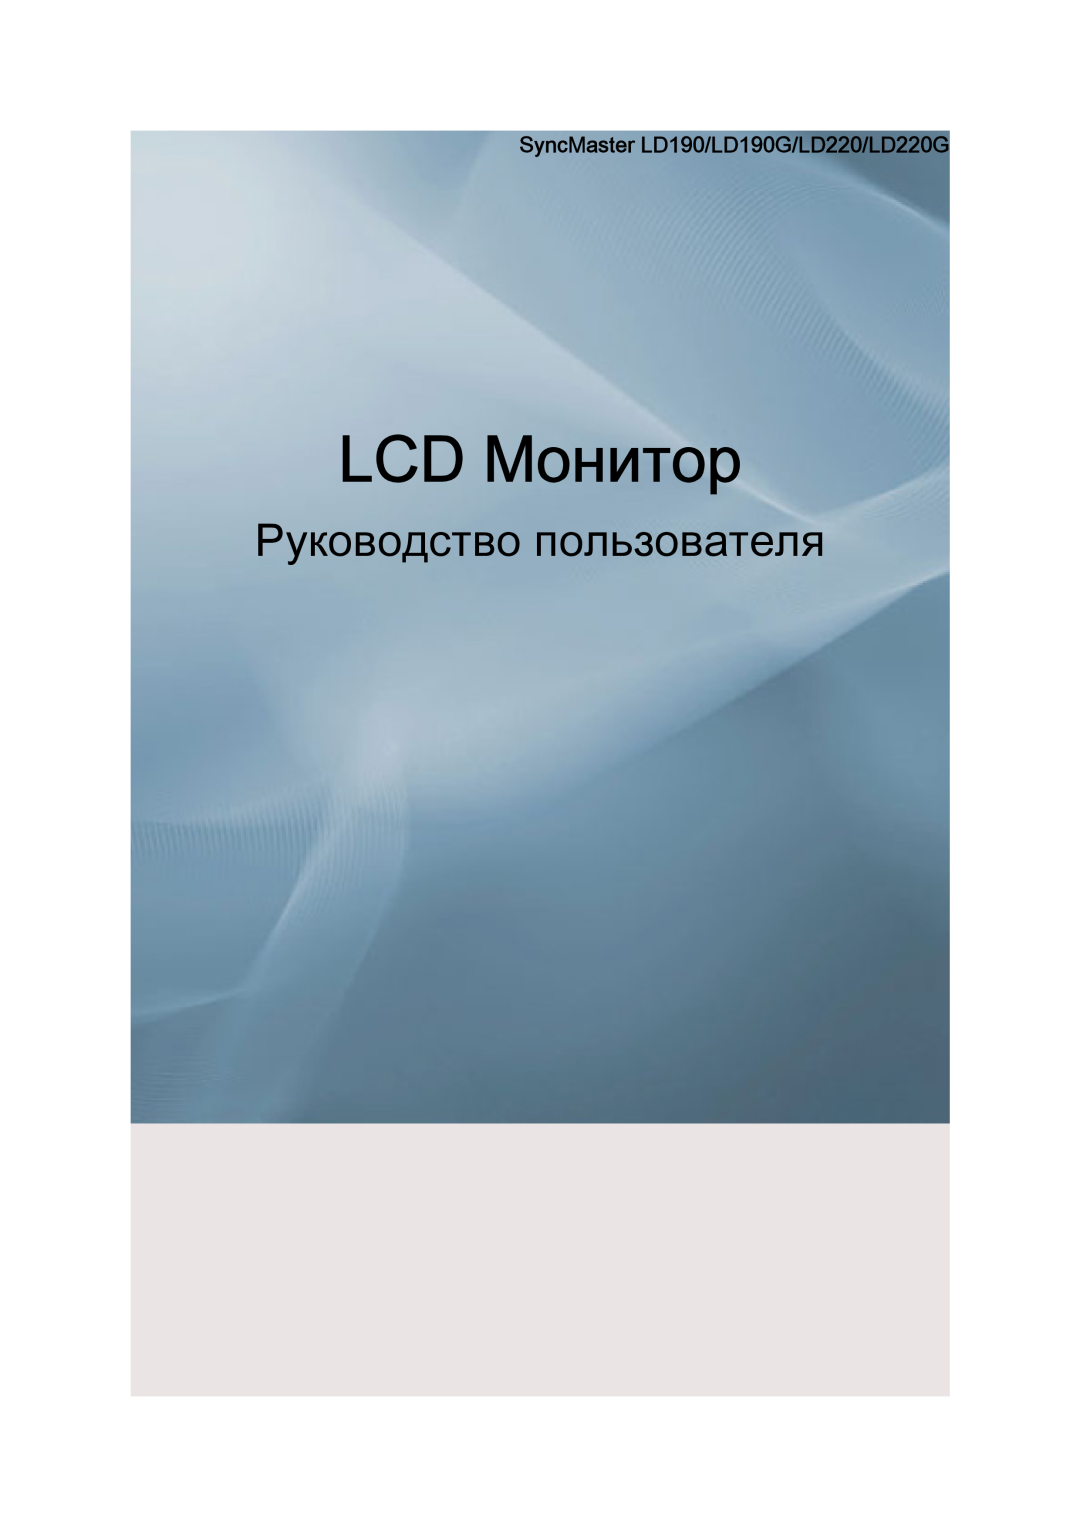 Samsung LS19LFUGF/EN, LS22LFUGFY/EN manual SyncMaster LD190/LD190G/LD220/LD220G, LCD Monitor, Manual del usuario 